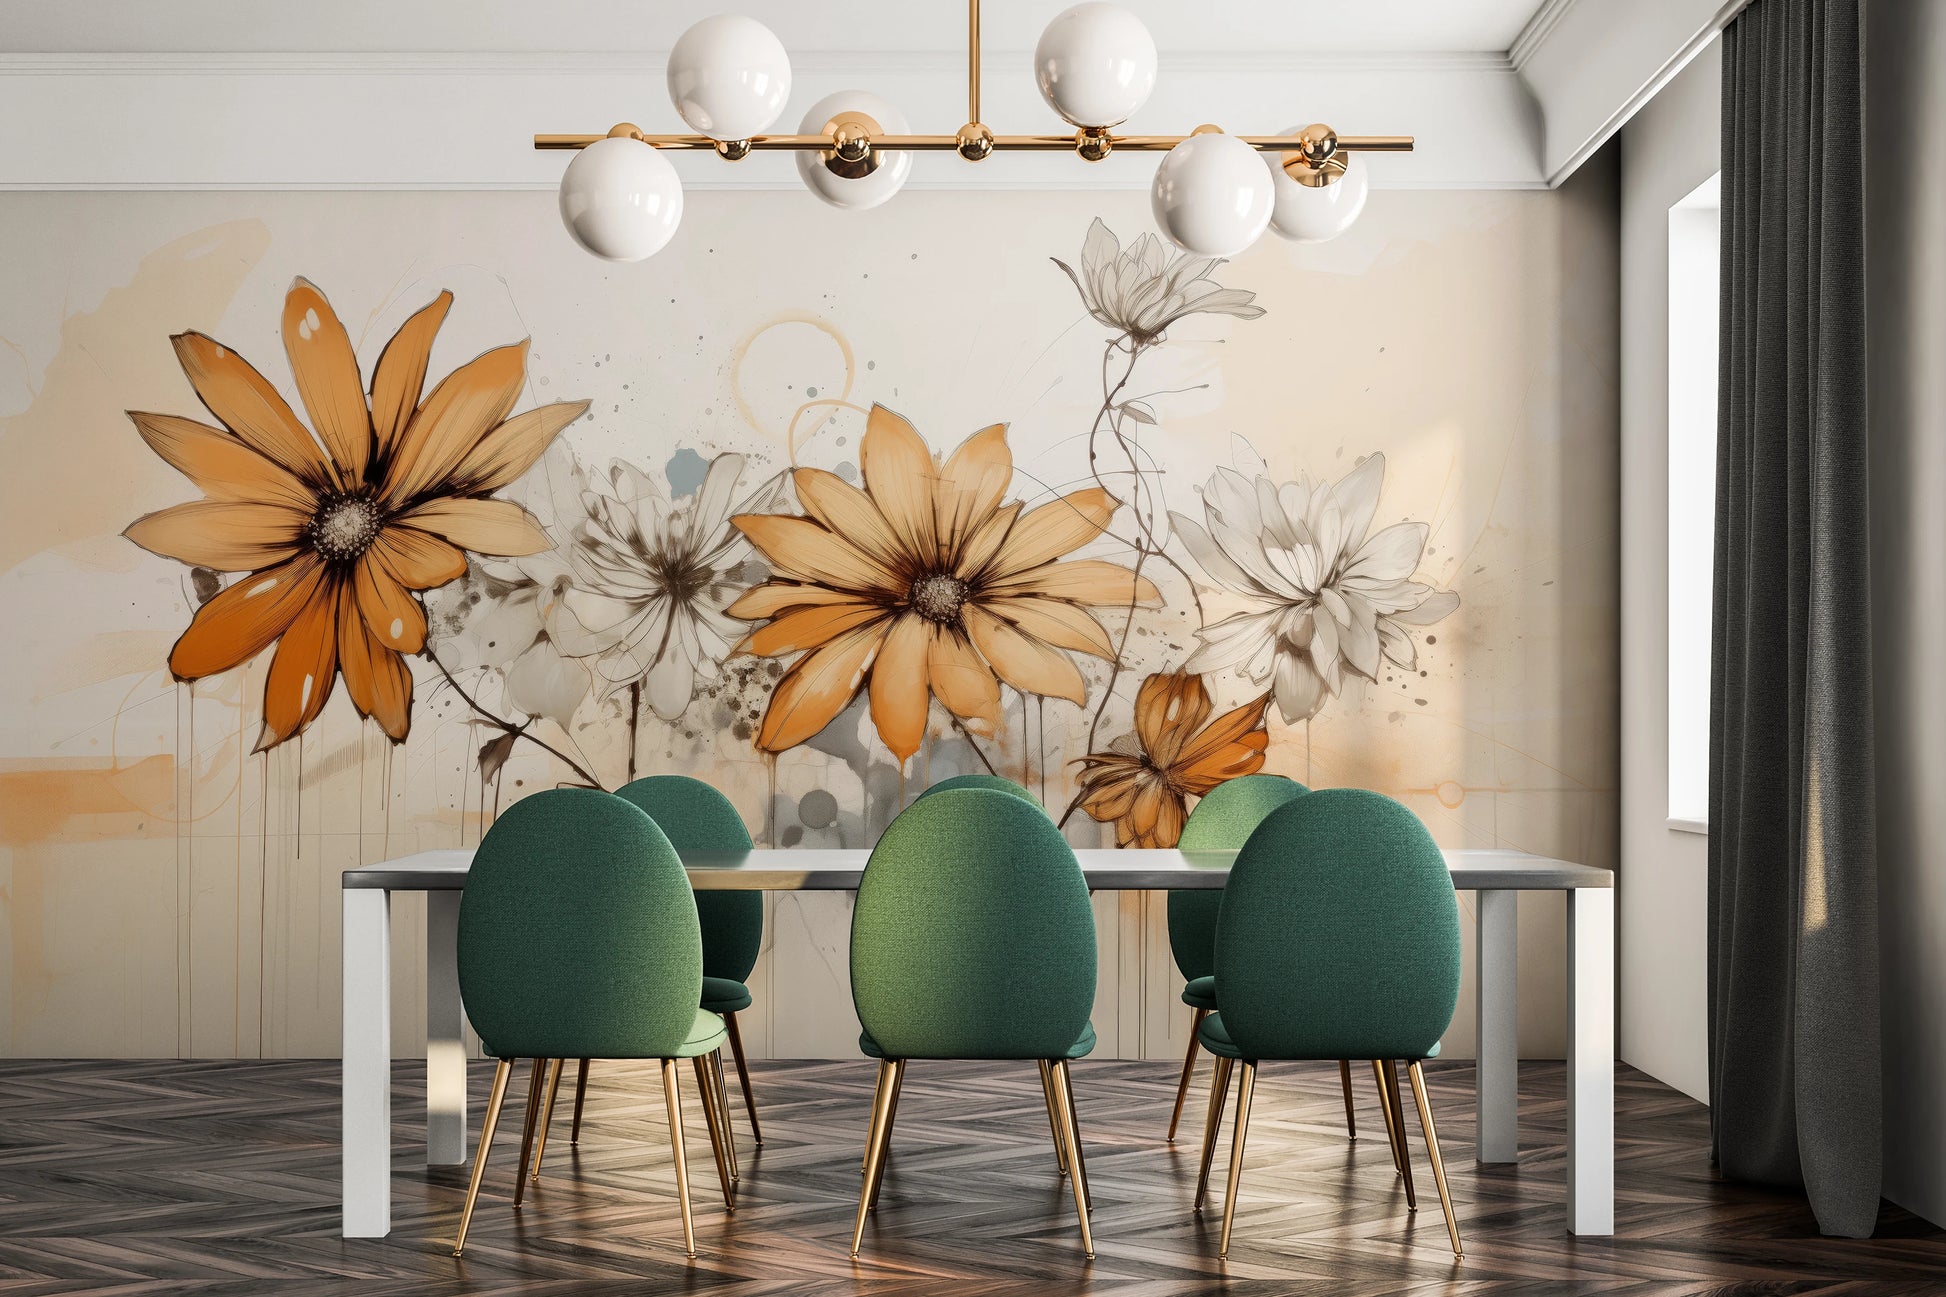 Wzór fototapety o nazwie Abstract Florals pokazanej w kontekście pomieszczenia.